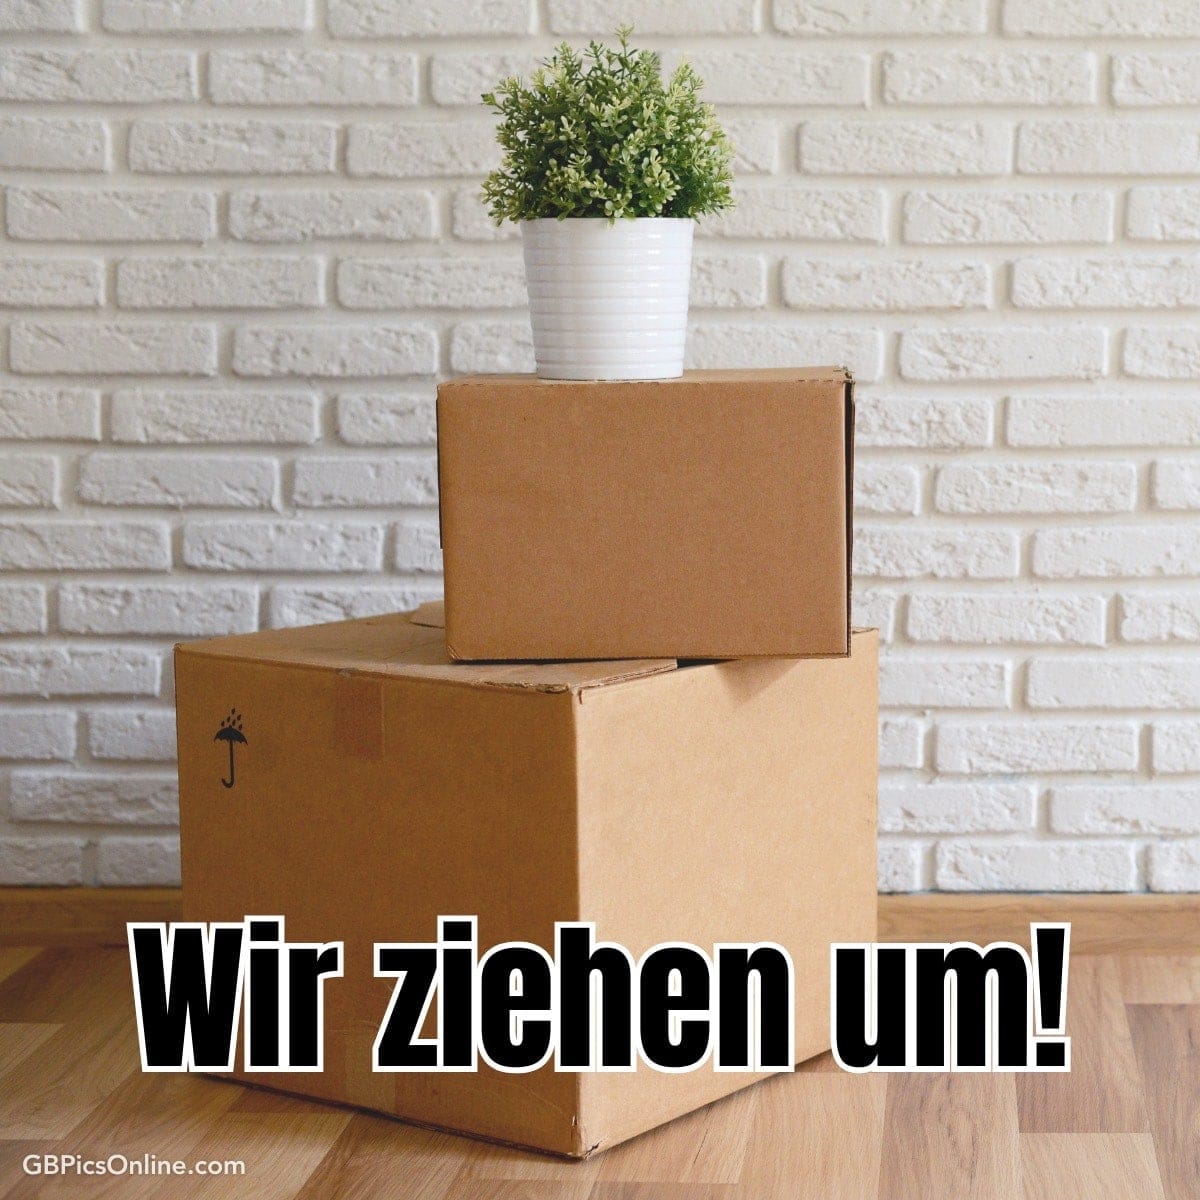 Zwei Packkartons gestapelt vor einer weißen Ziegelwand, eine Topfpflanze oben auf dem oberen Karton, Text: „Wir ziehen um!“